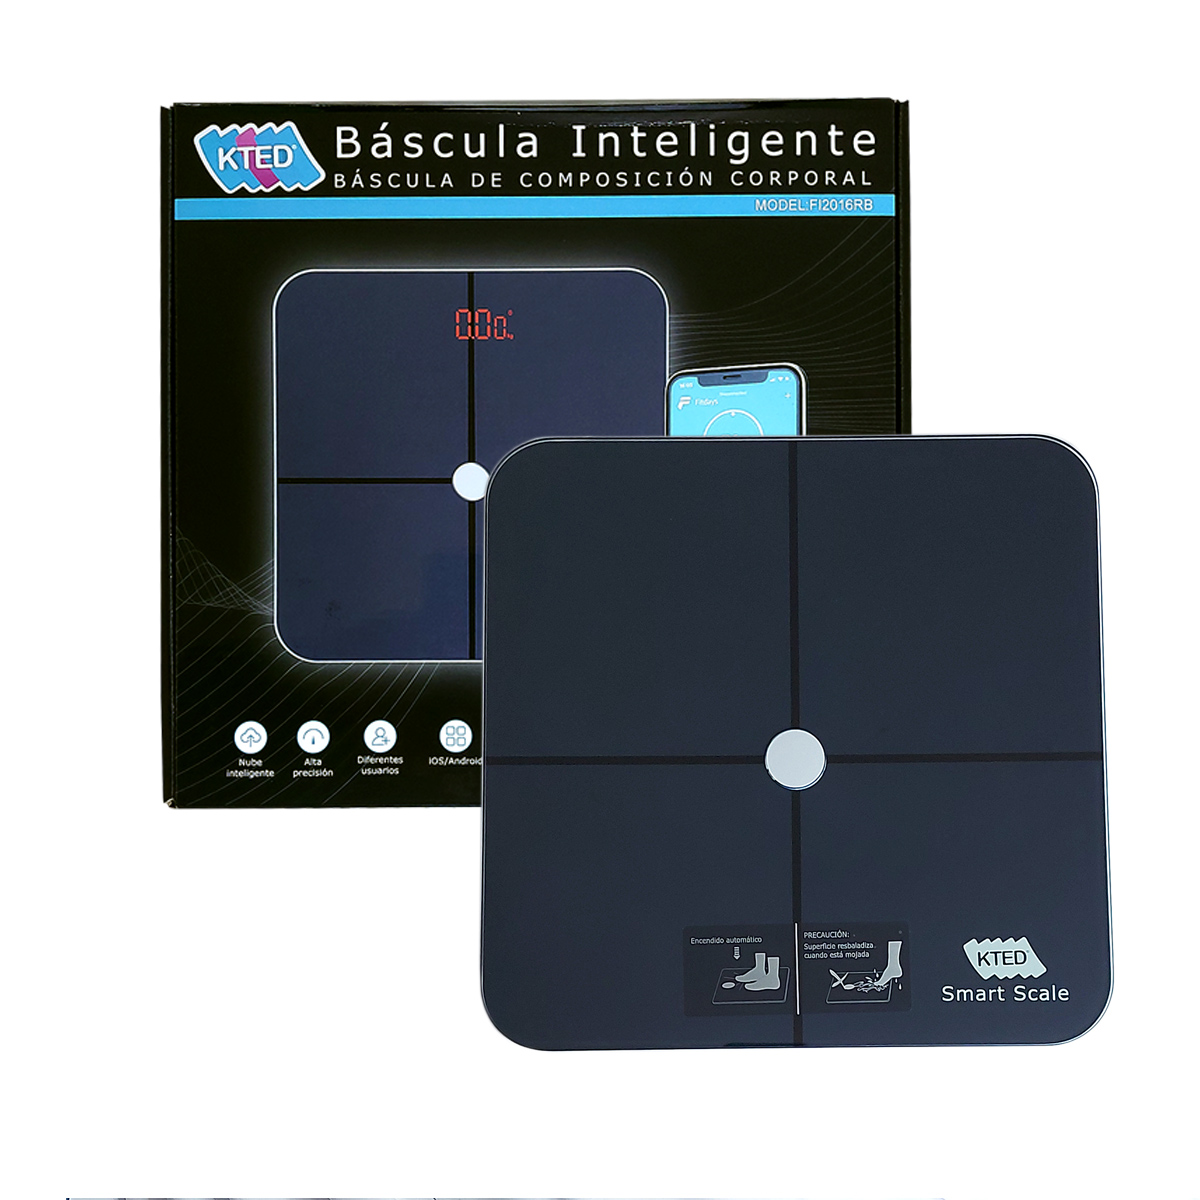 INEVIFIT Báscula inteligente de grasa corporal, analizador digital de  composición corporal de baño Bluetooth de alta precisión, mide peso, grasa